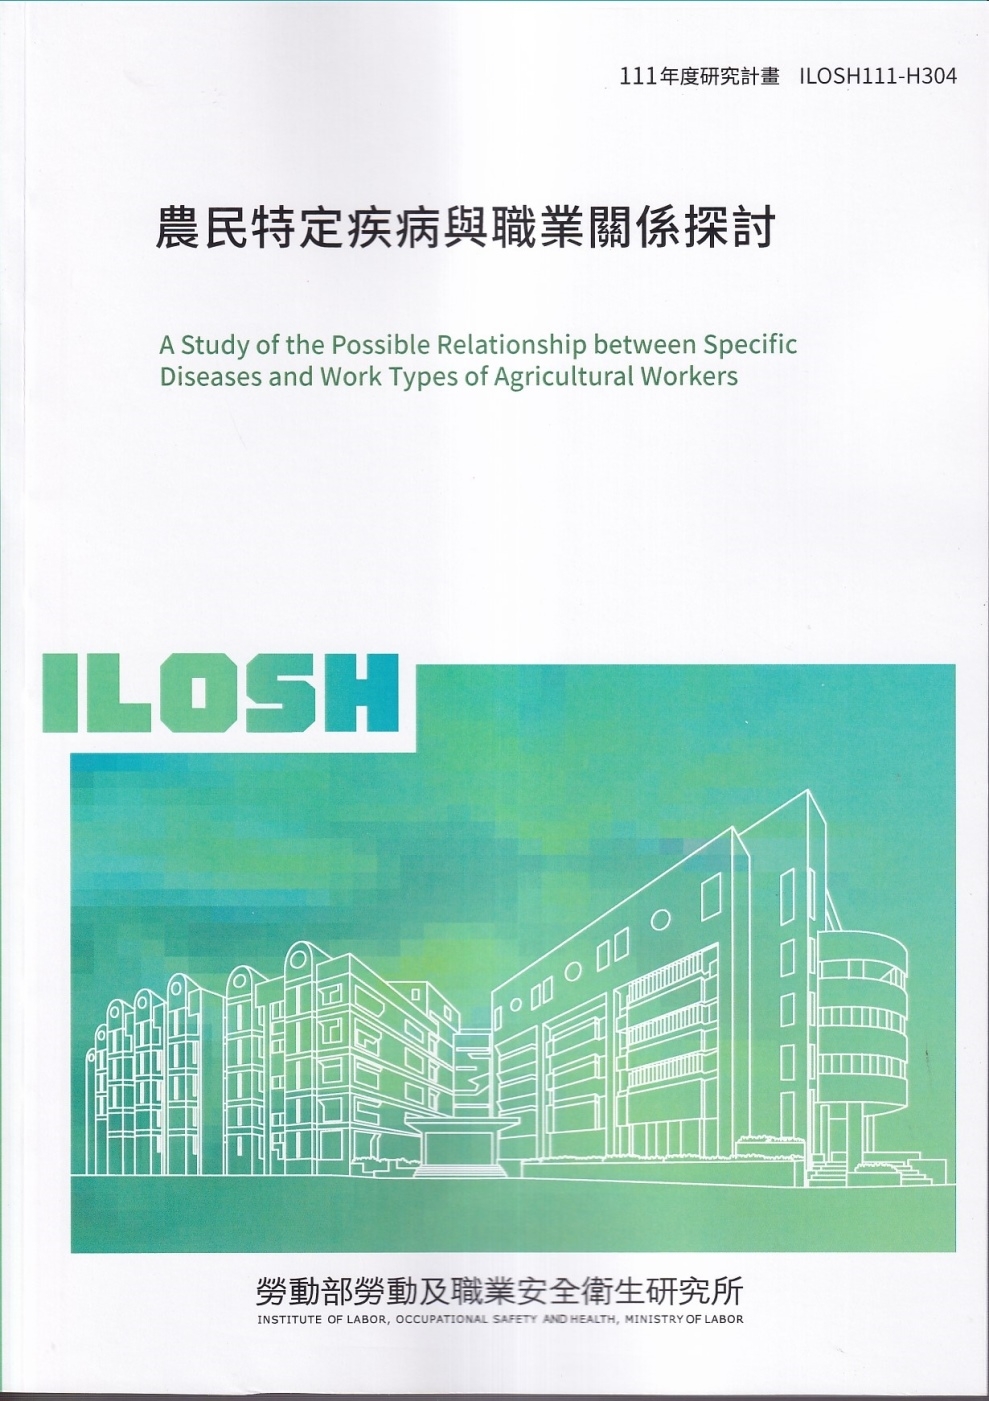 農民特定疾病與職業關係探討ILOSH111-H304